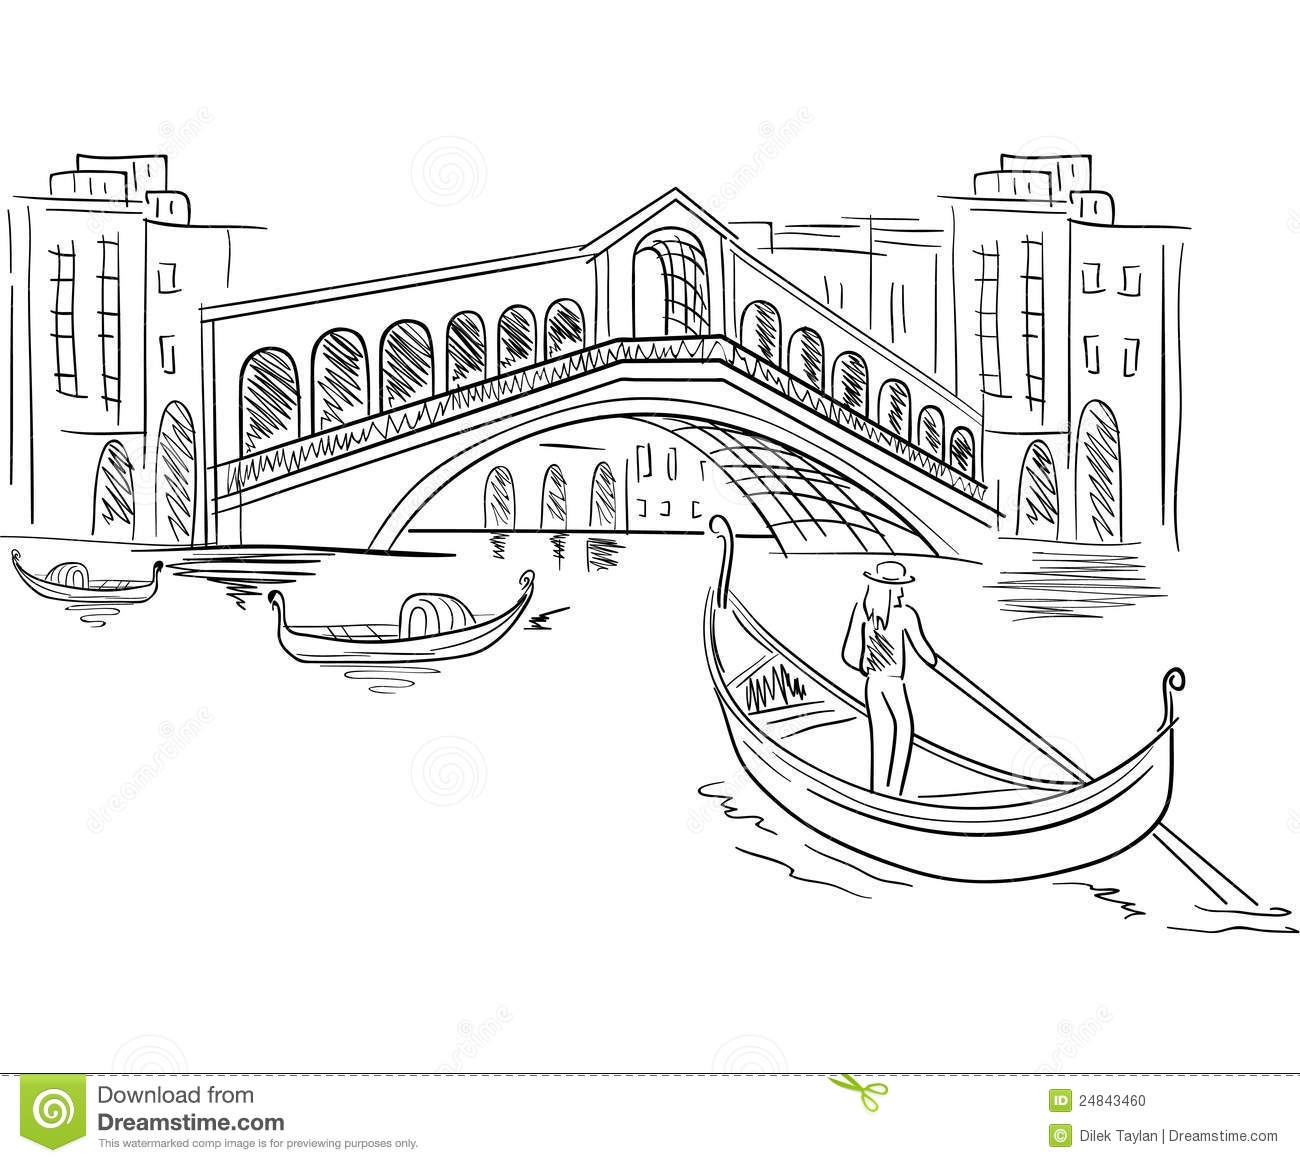 Раскраски архитектура Венеции для детей